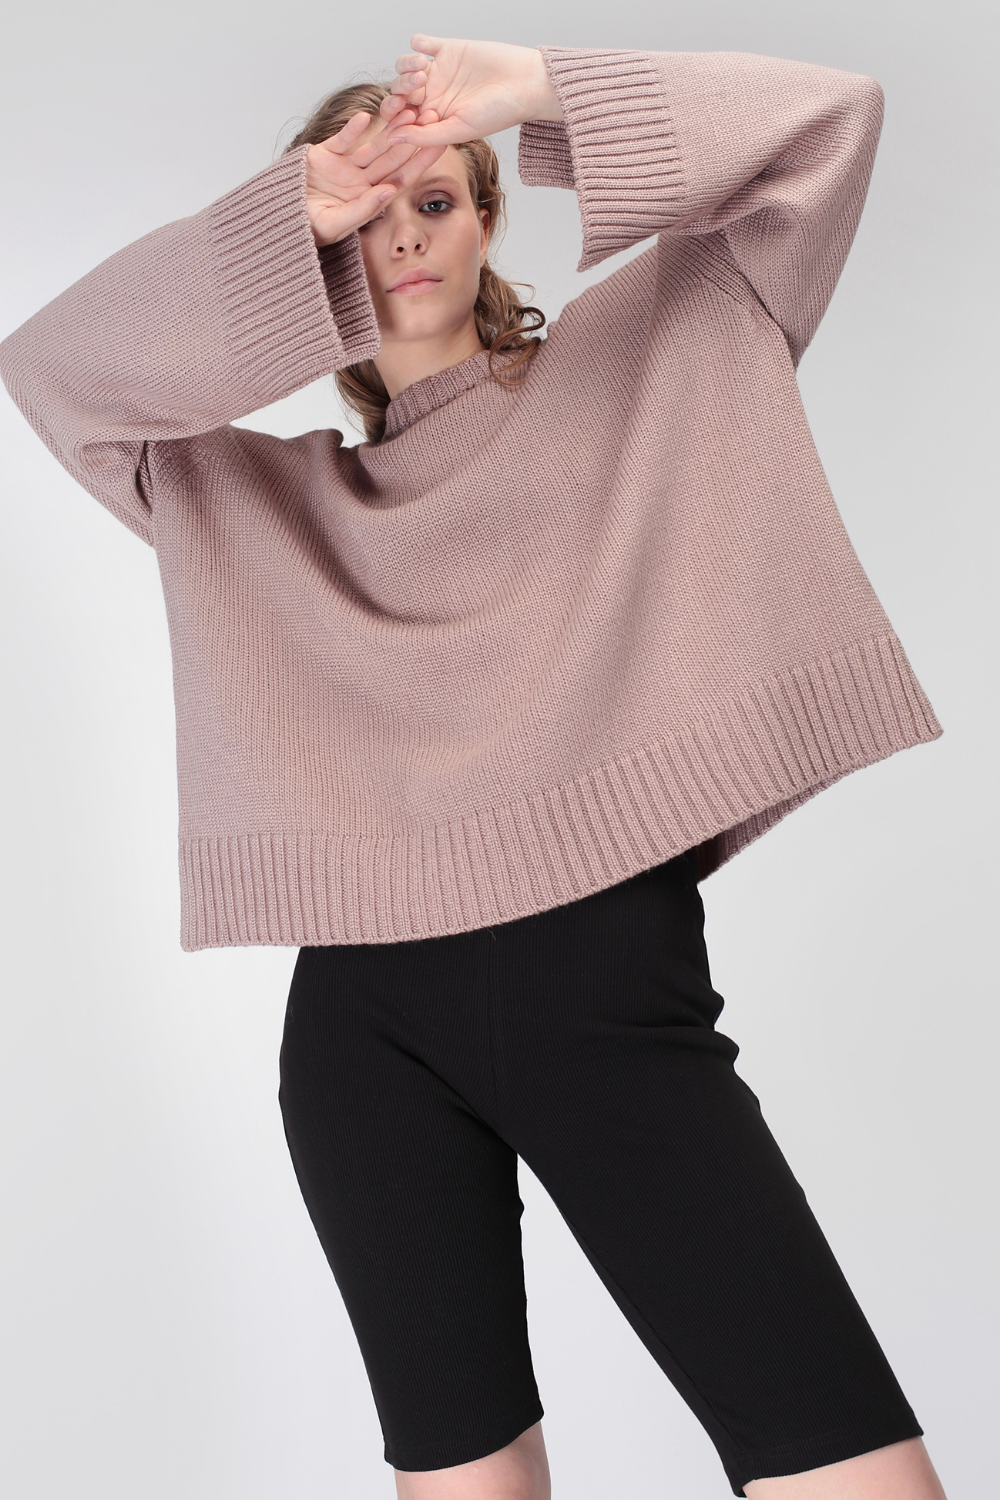 Objemový pulovr z vlny bez hrdla (Miss Secret) PU-015